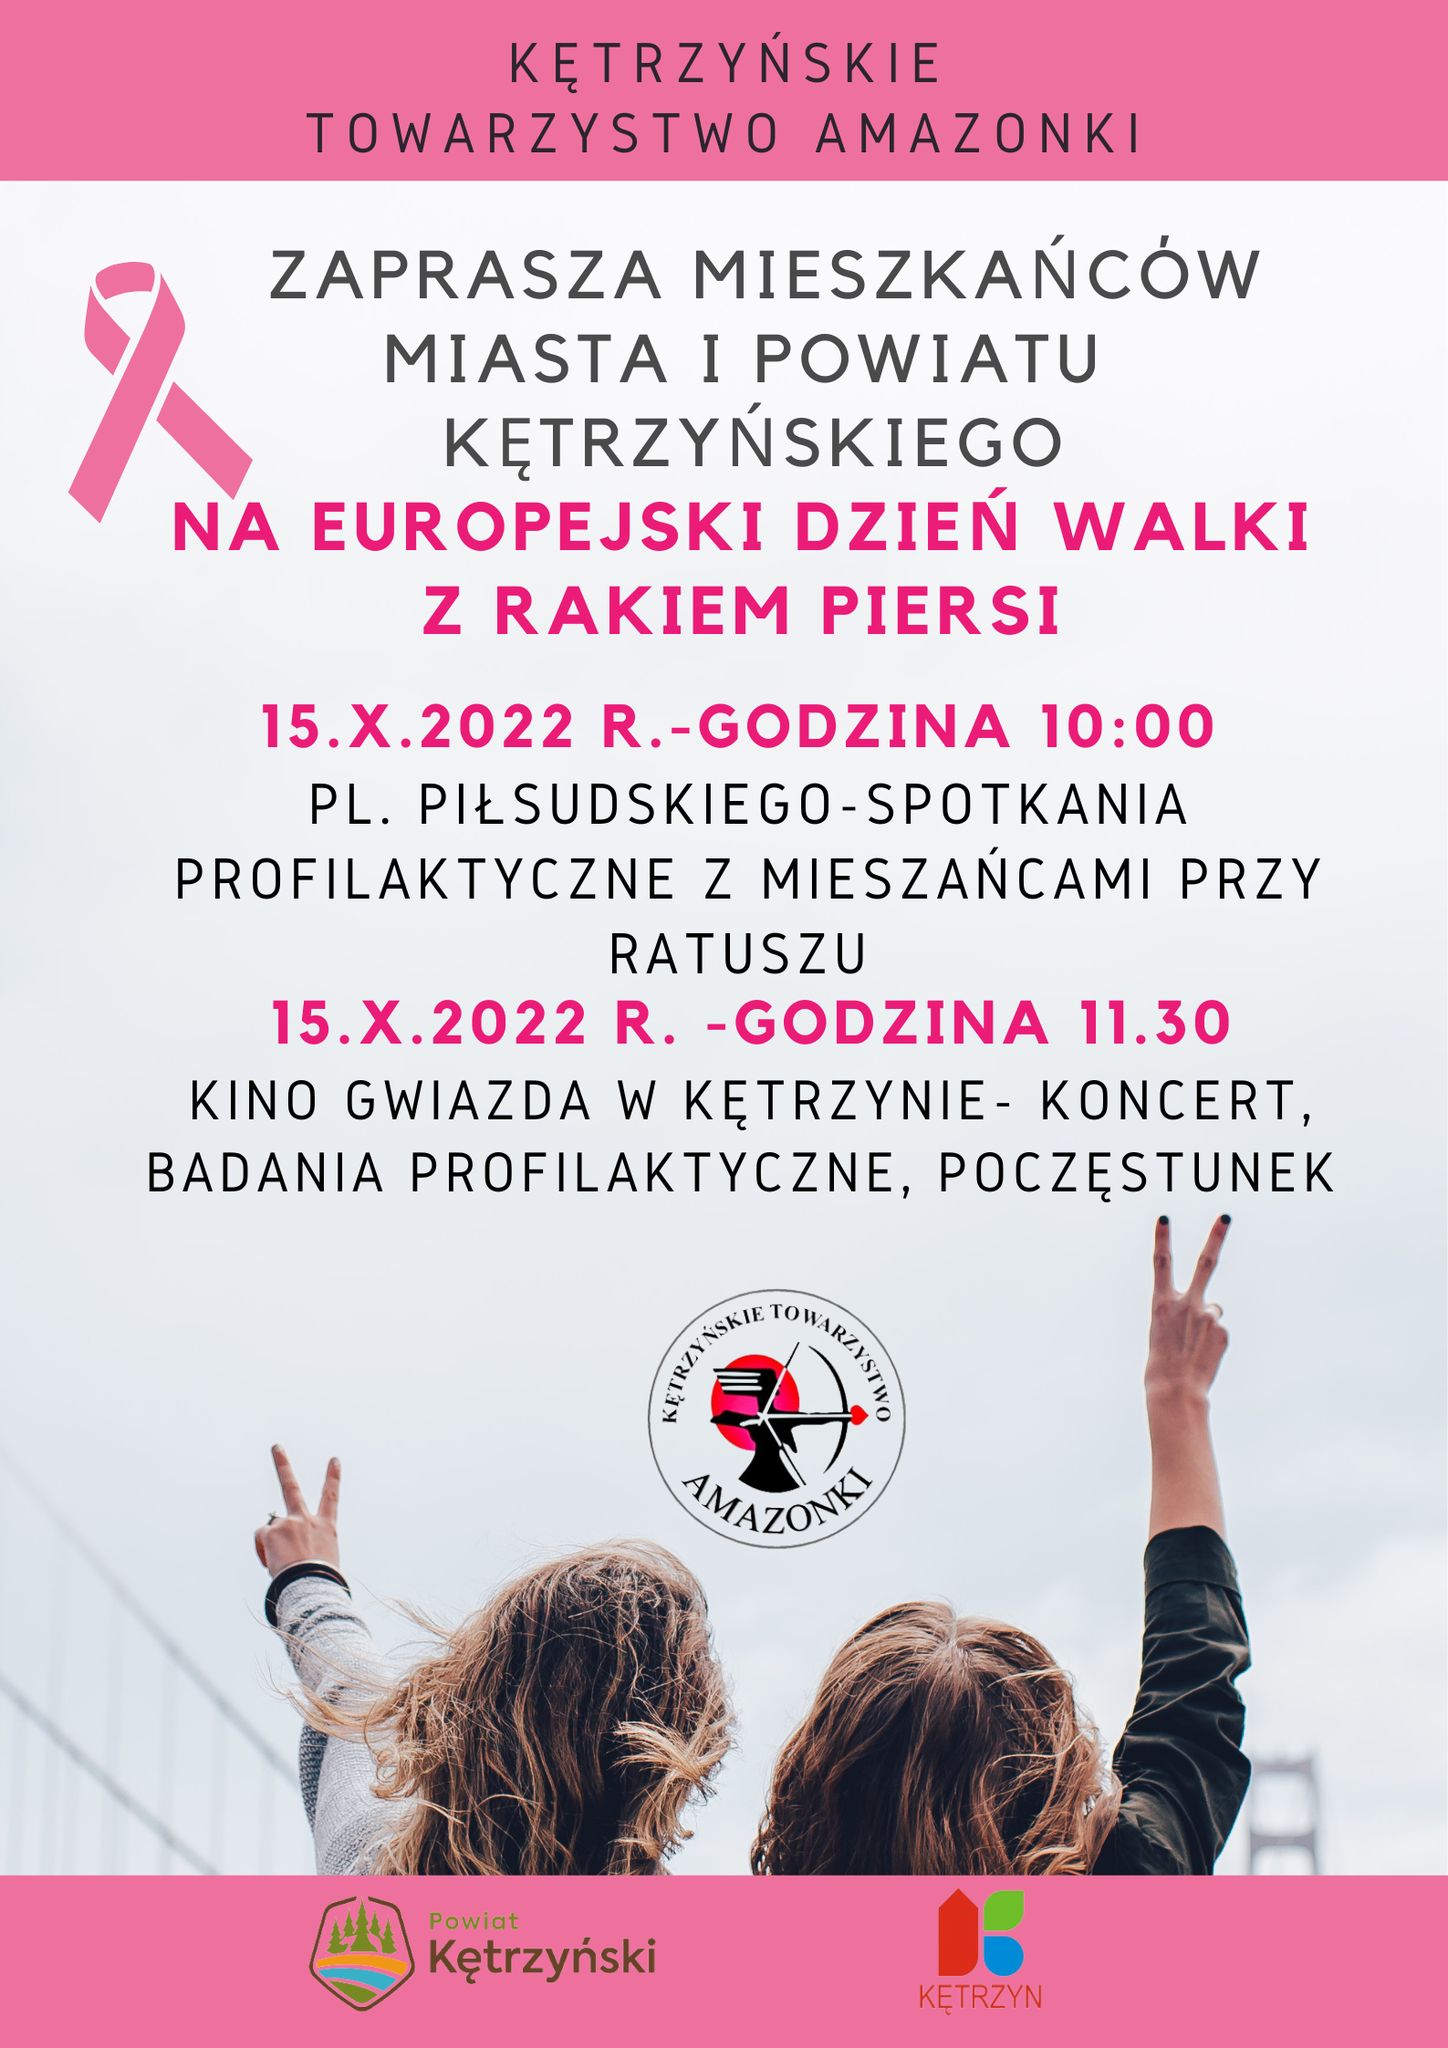 Serdecznie zapraszamy na Europejski Dzień Walki z Rakiem Piersi organizowany przez Kętrzyńskie Towarzystwo Amazonki ? Już w sobotę o godz. 10:00 na Placu Piłsudskiego odbędą się spotkania profilaktyczne ? bądźcie z nami ?